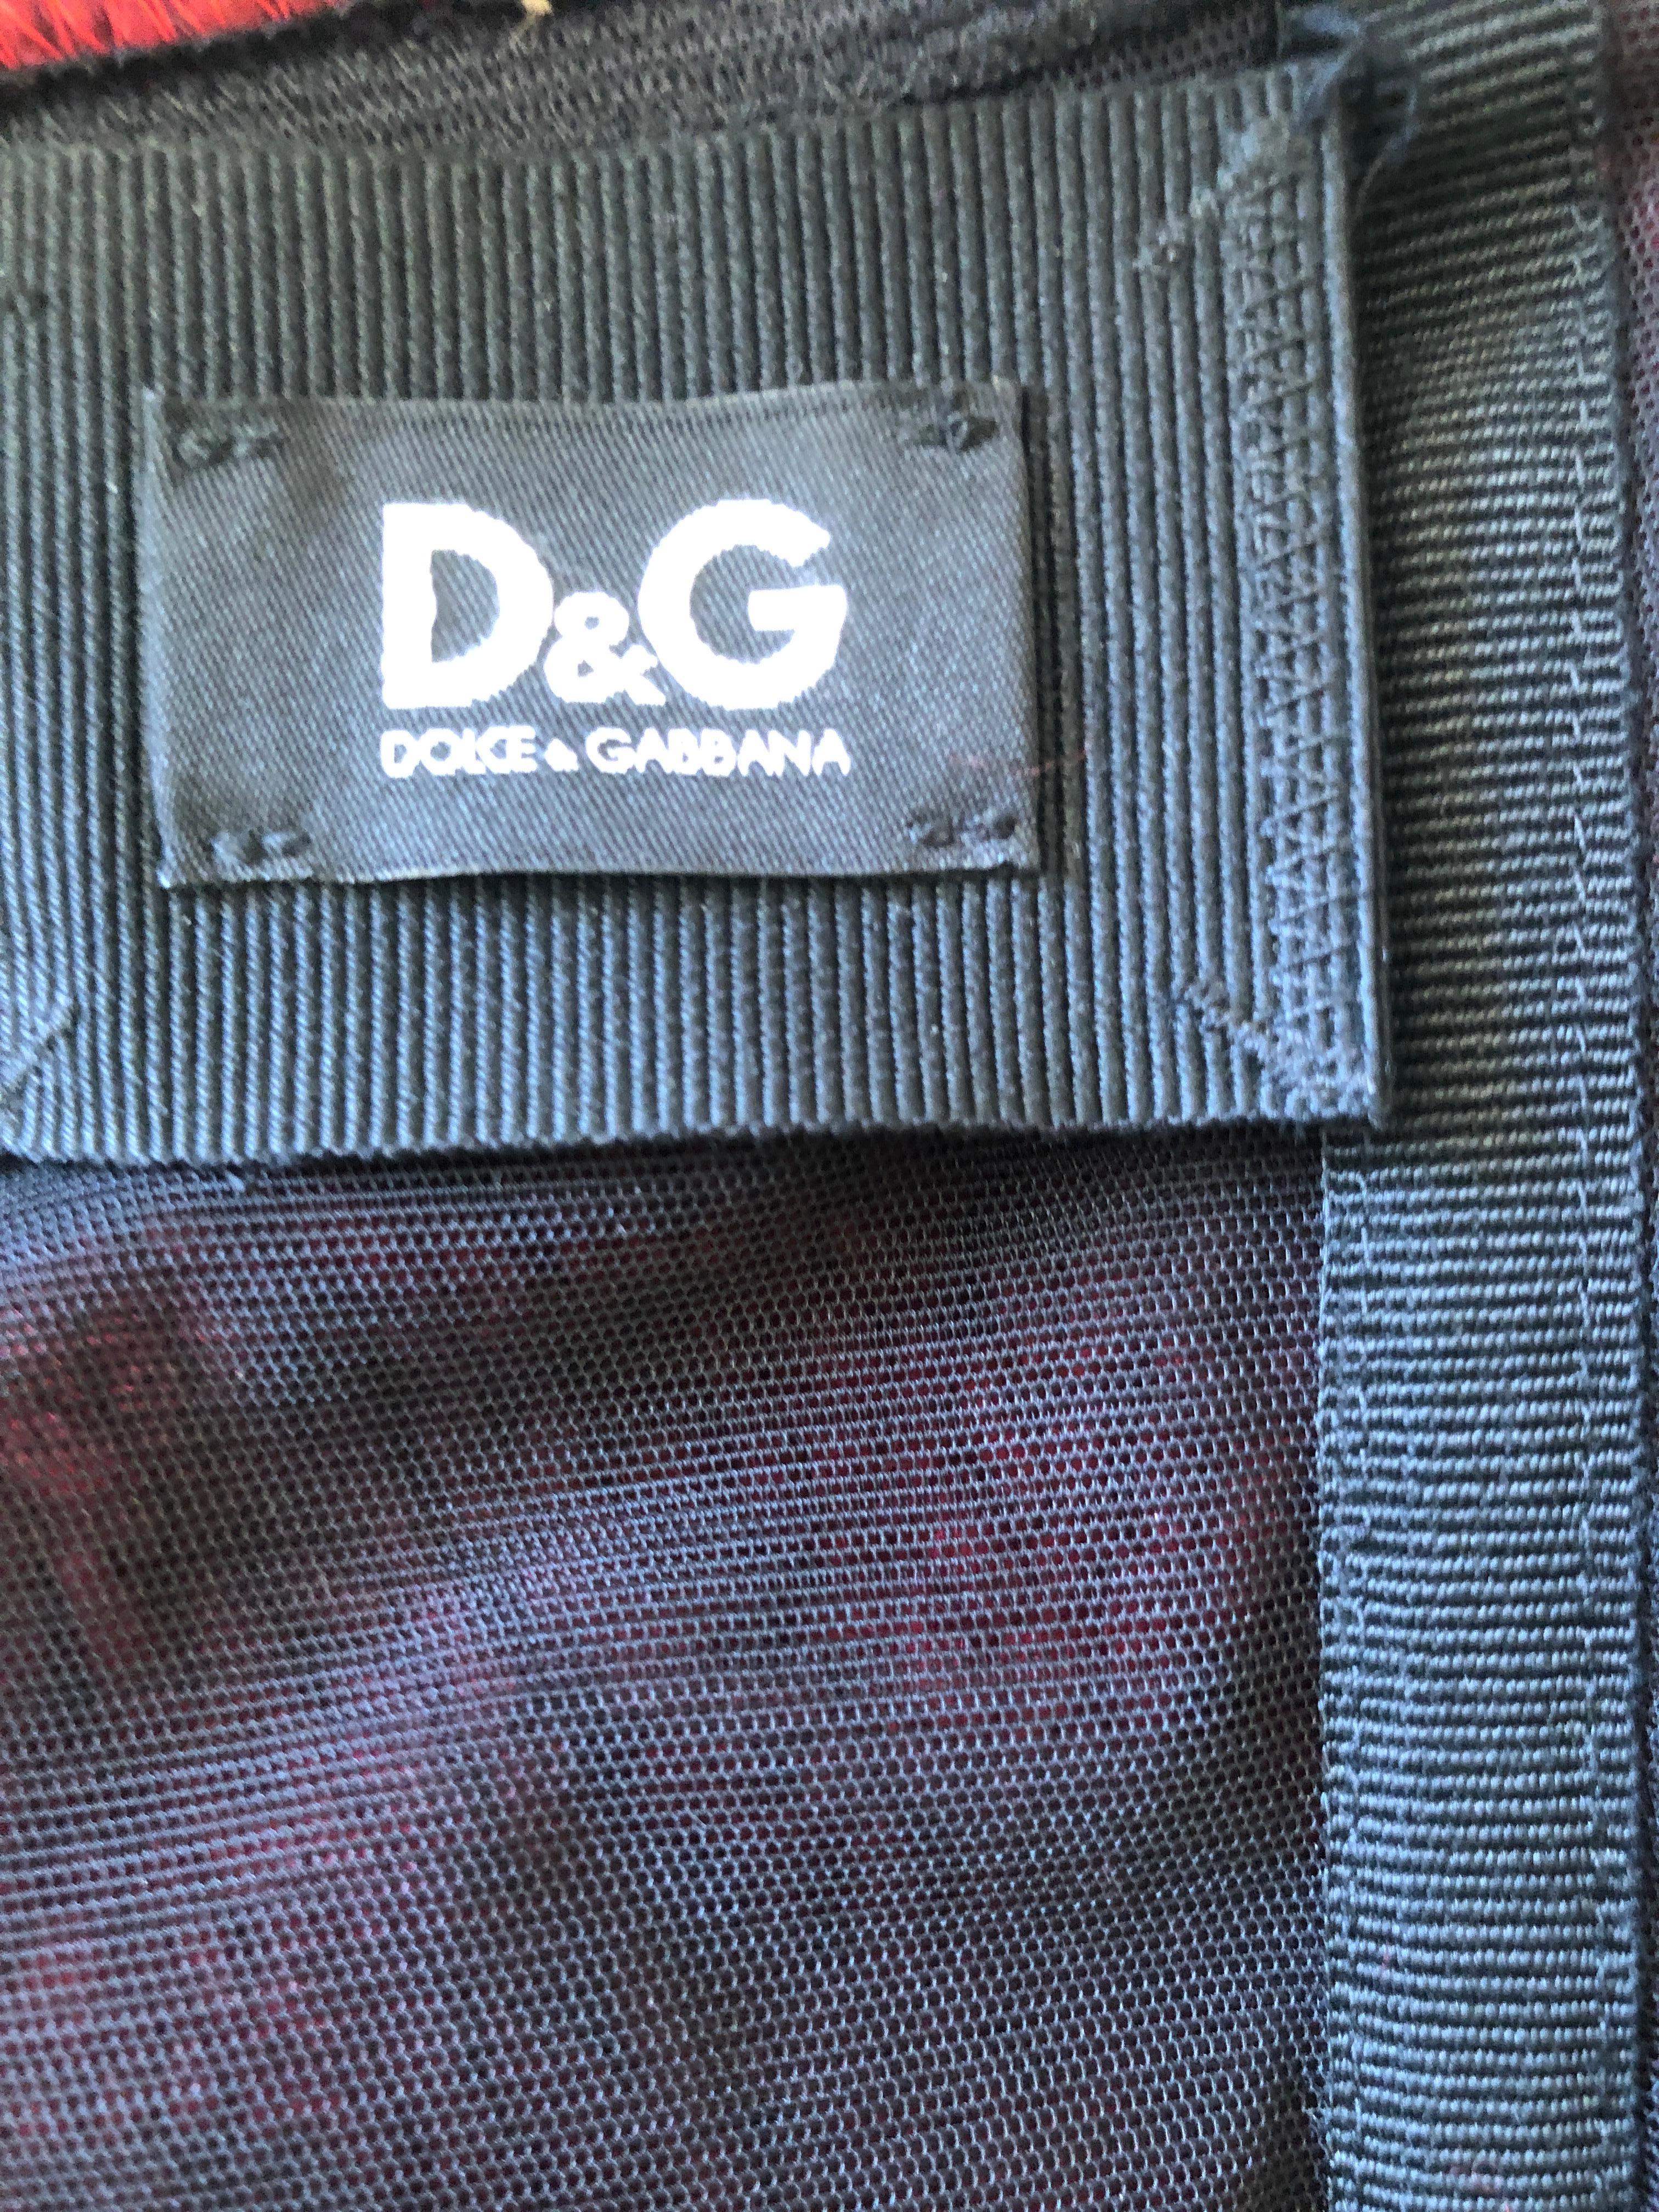 D&G Dolce & Gabbana Vintage Cable Knit Corset For Sale 2